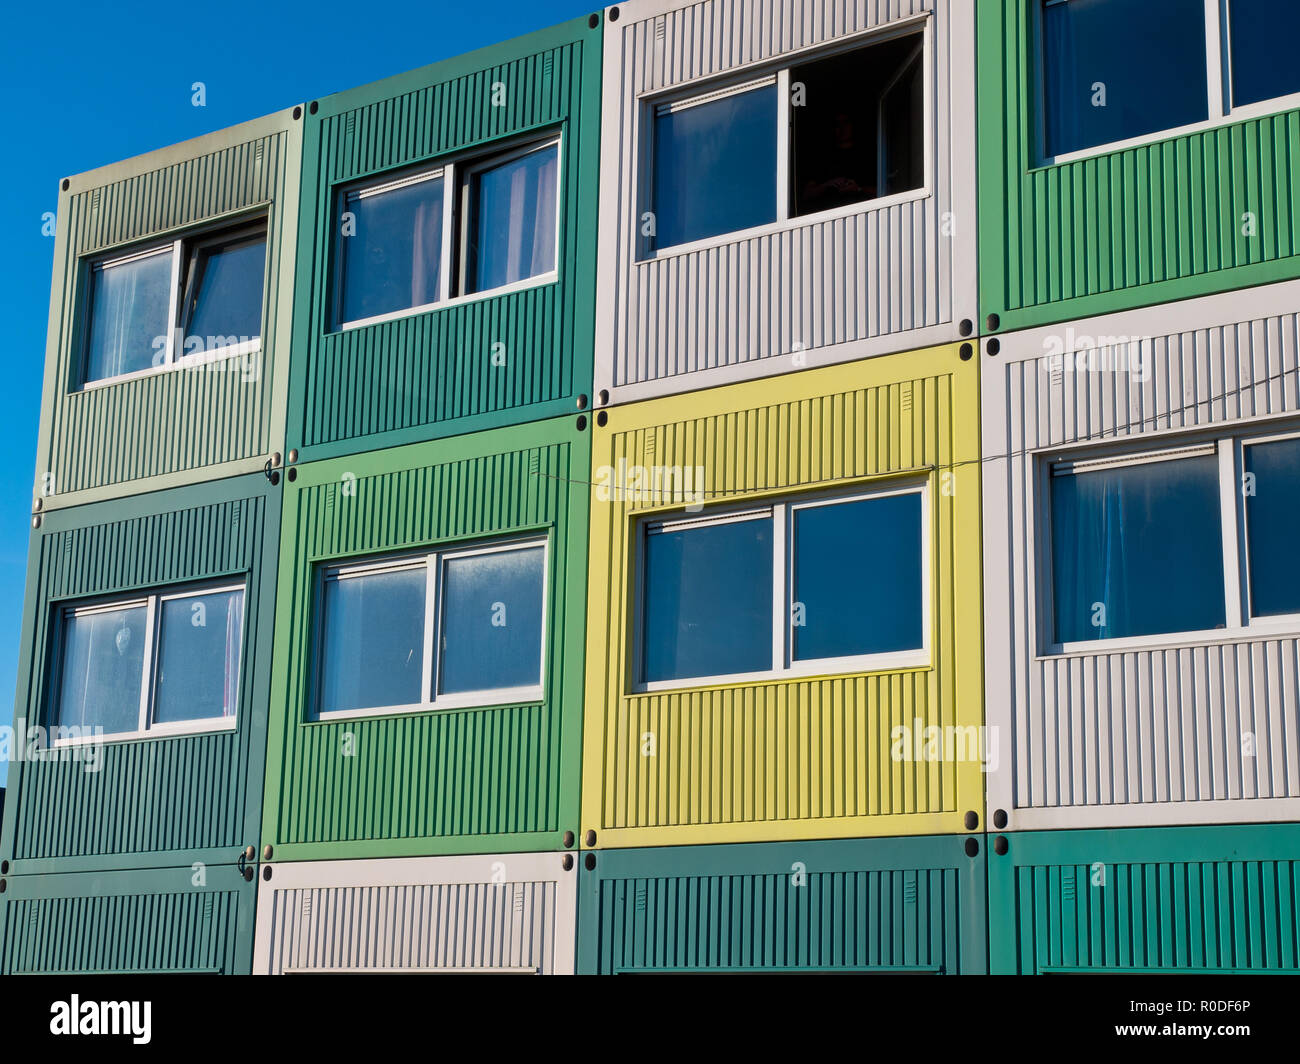 Studenten wohnen in Frachtcontainern in unterschiedlichen Farben Stockfoto